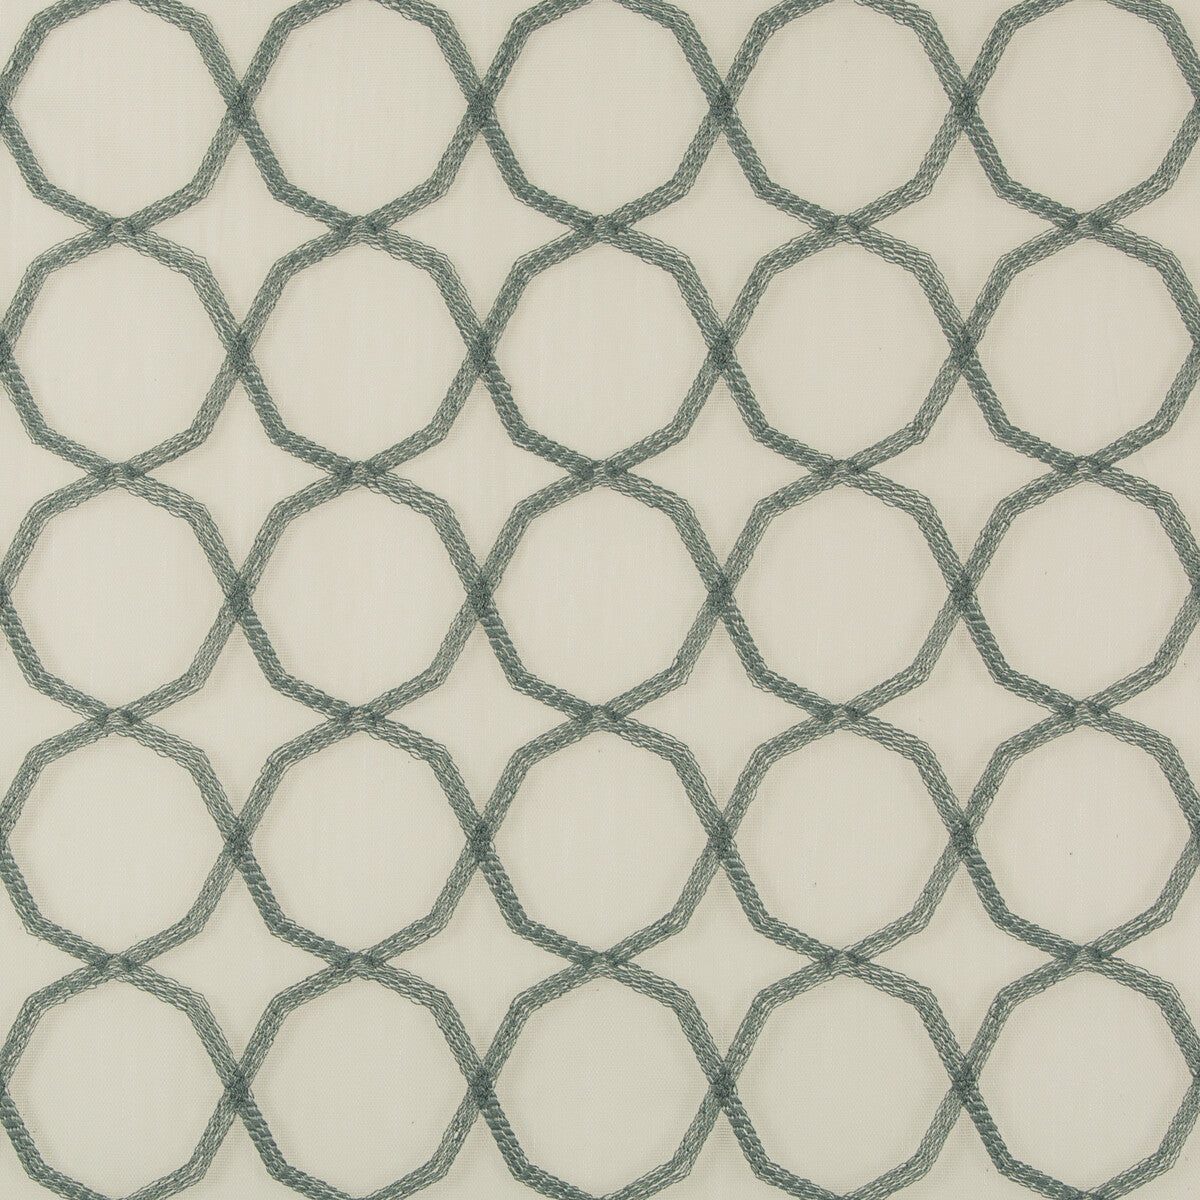 Kravet Basics fabric in 4714-135 color - pattern 4714.135.0 - by Kravet Basics